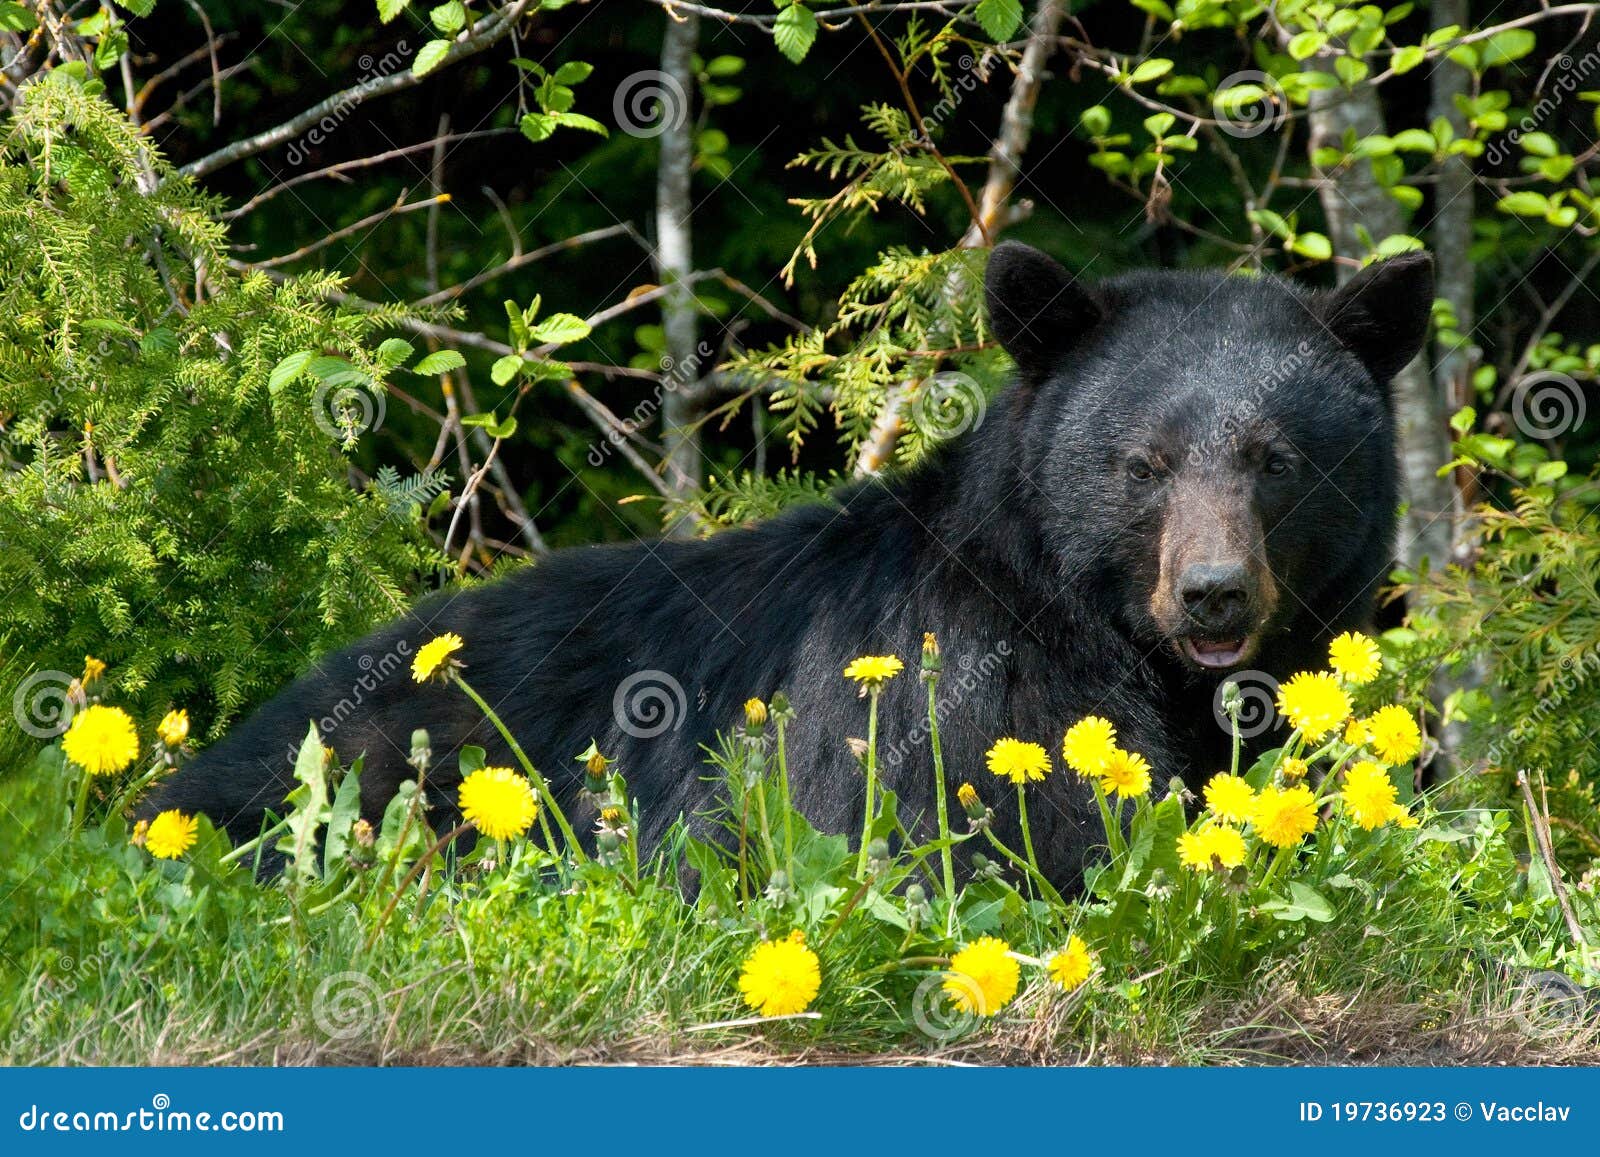 black bear in wilderness